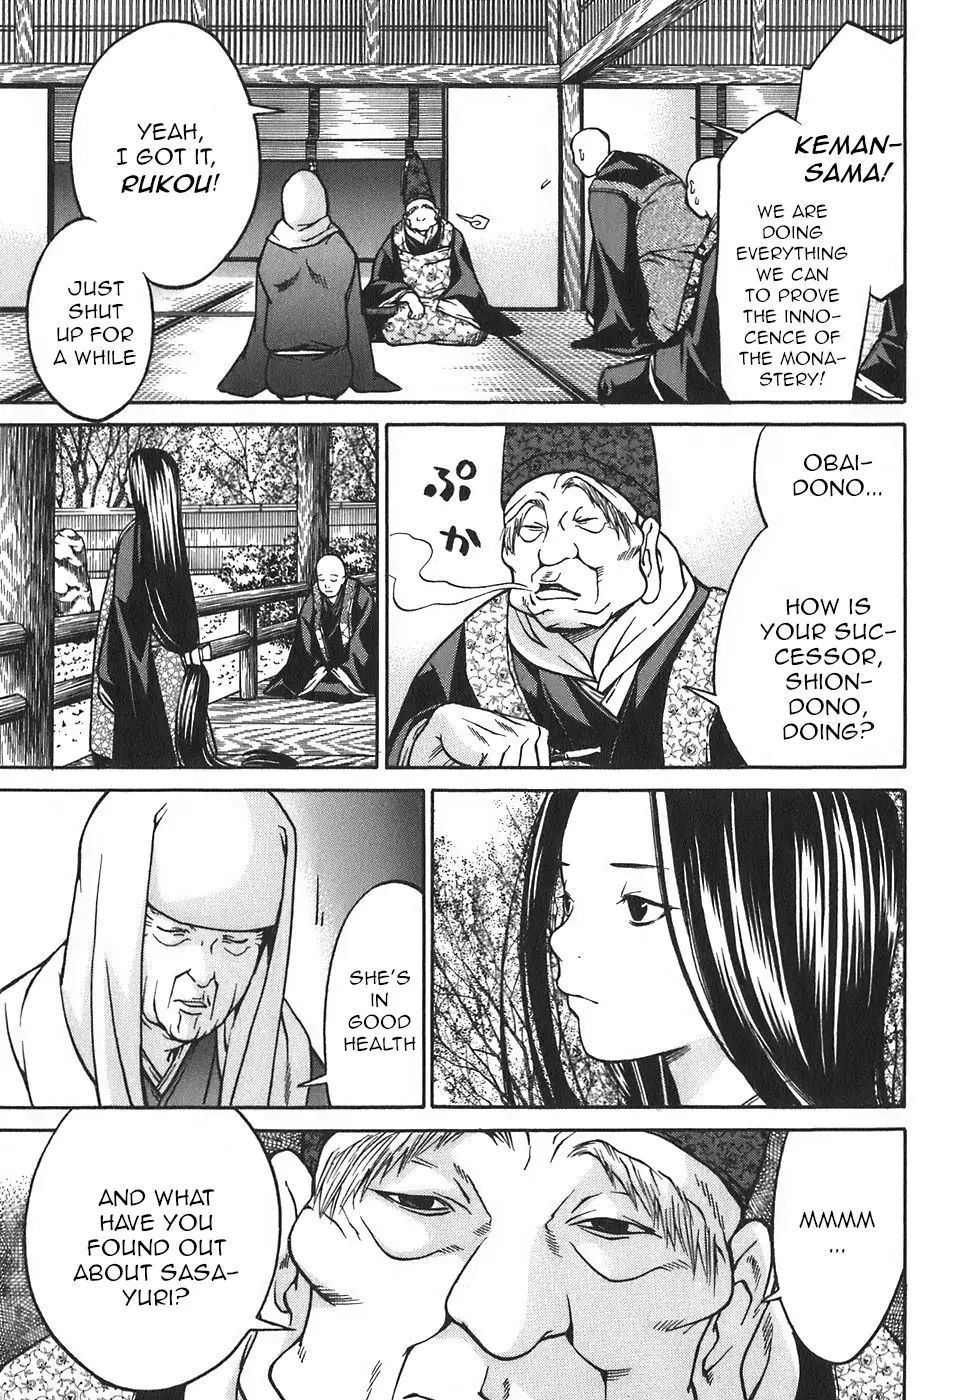 Ateya No Tsubaki - 17 page 3-5174e4e2